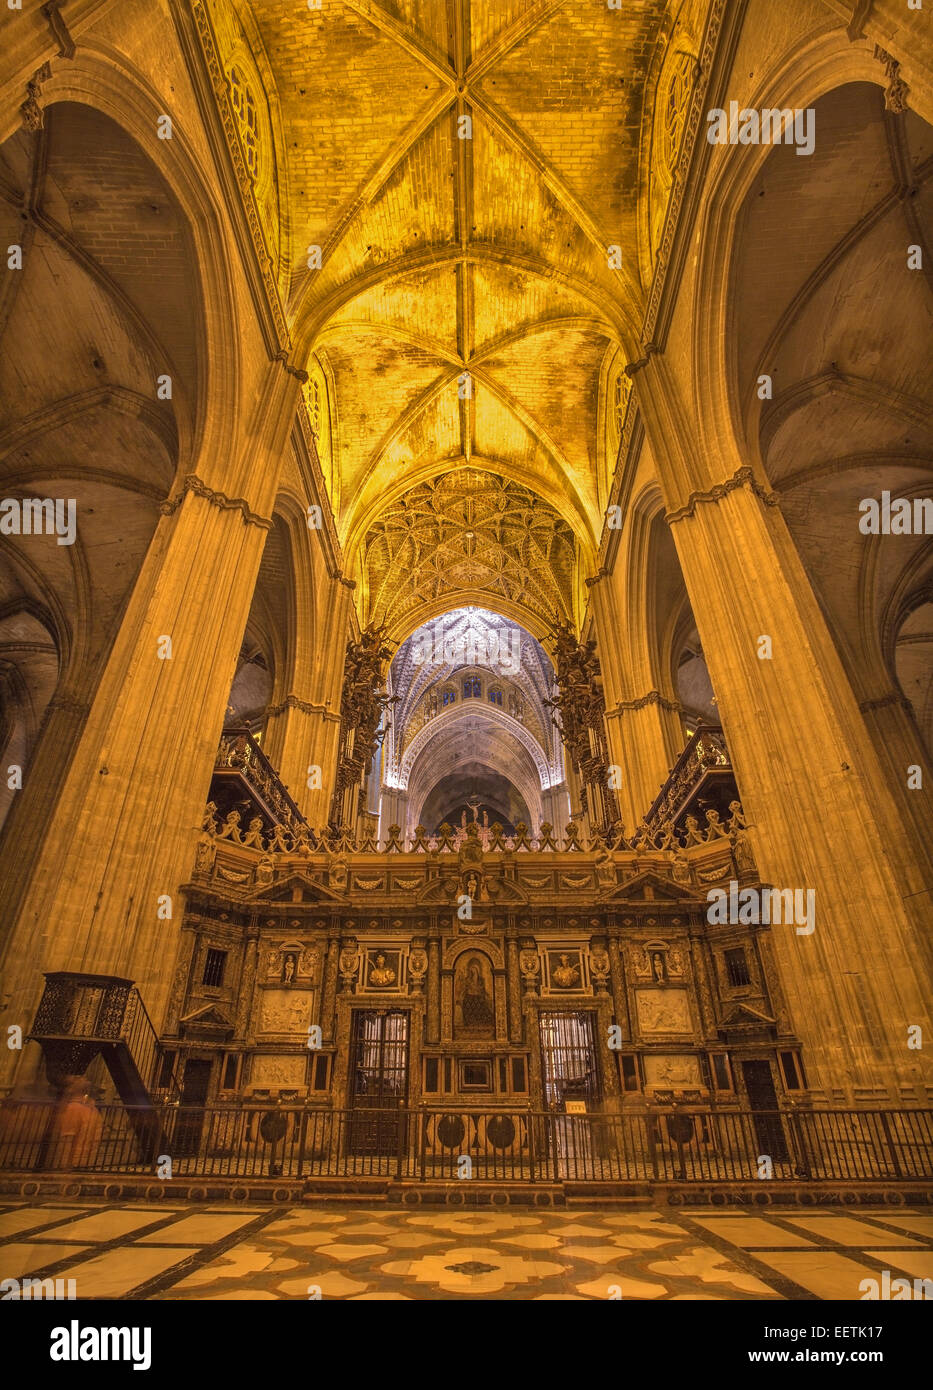 Sevilla, España - 27 de octubre, 2014: Interior de la Catedral de Santa María de la Sede. Foto de stock